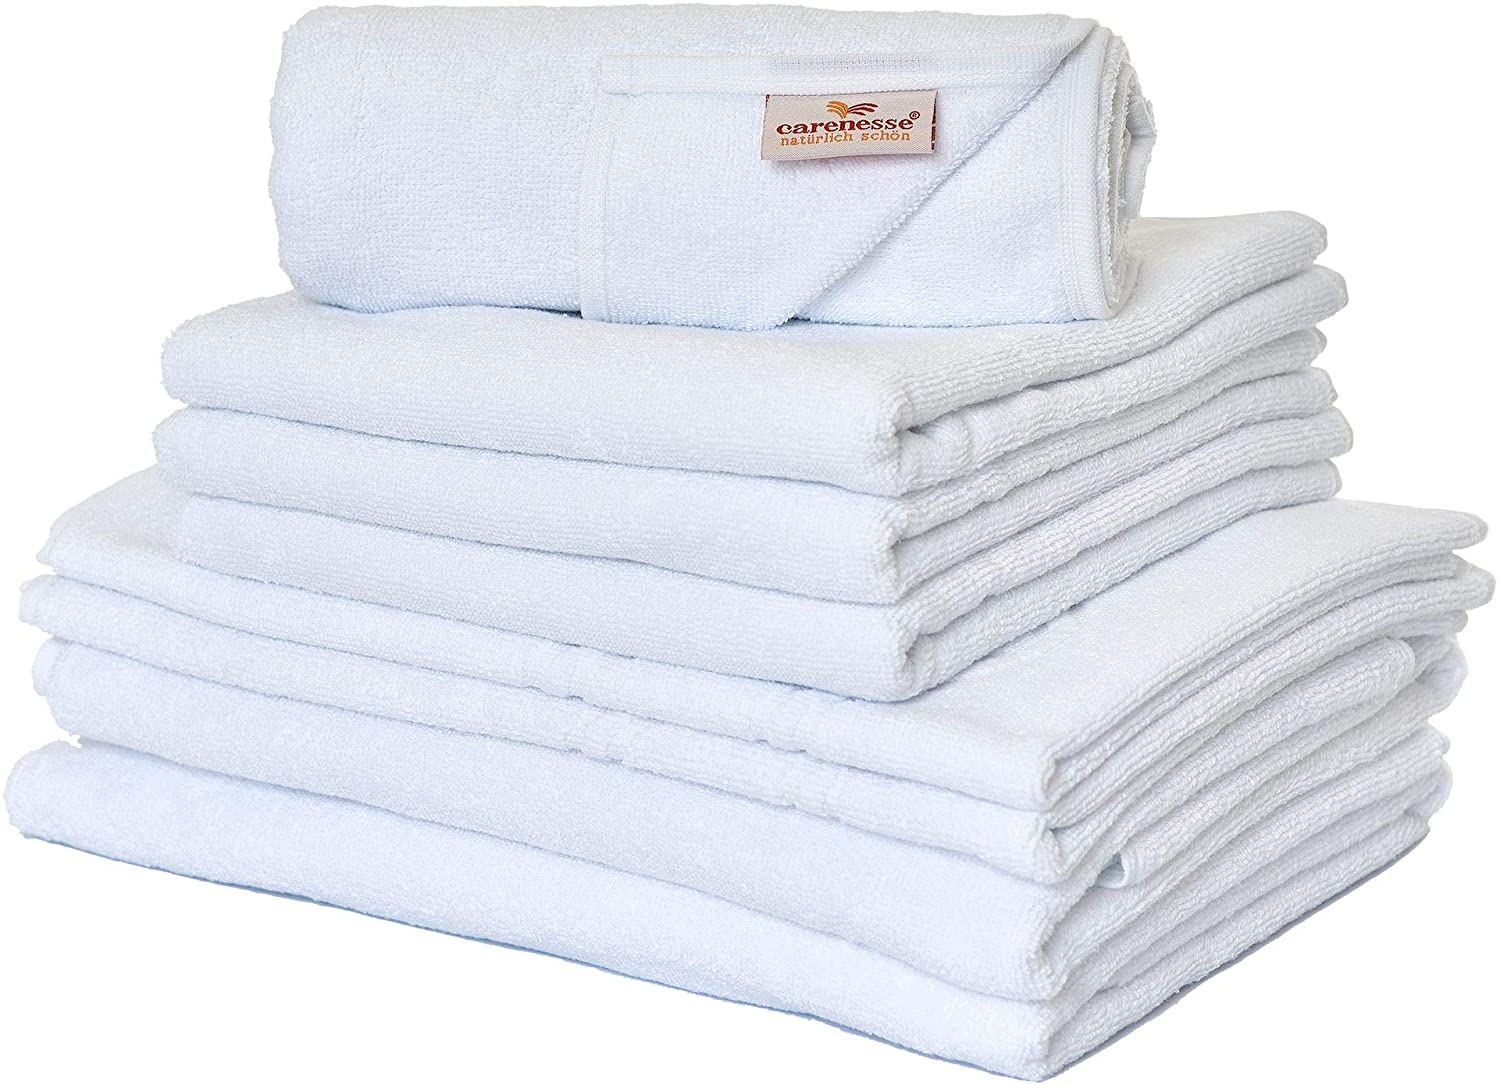 Handtuch Set 8 tlg. Basic weiß-Premium Hotel Qualität günstig hier kaufen! | Kinderhandtücher